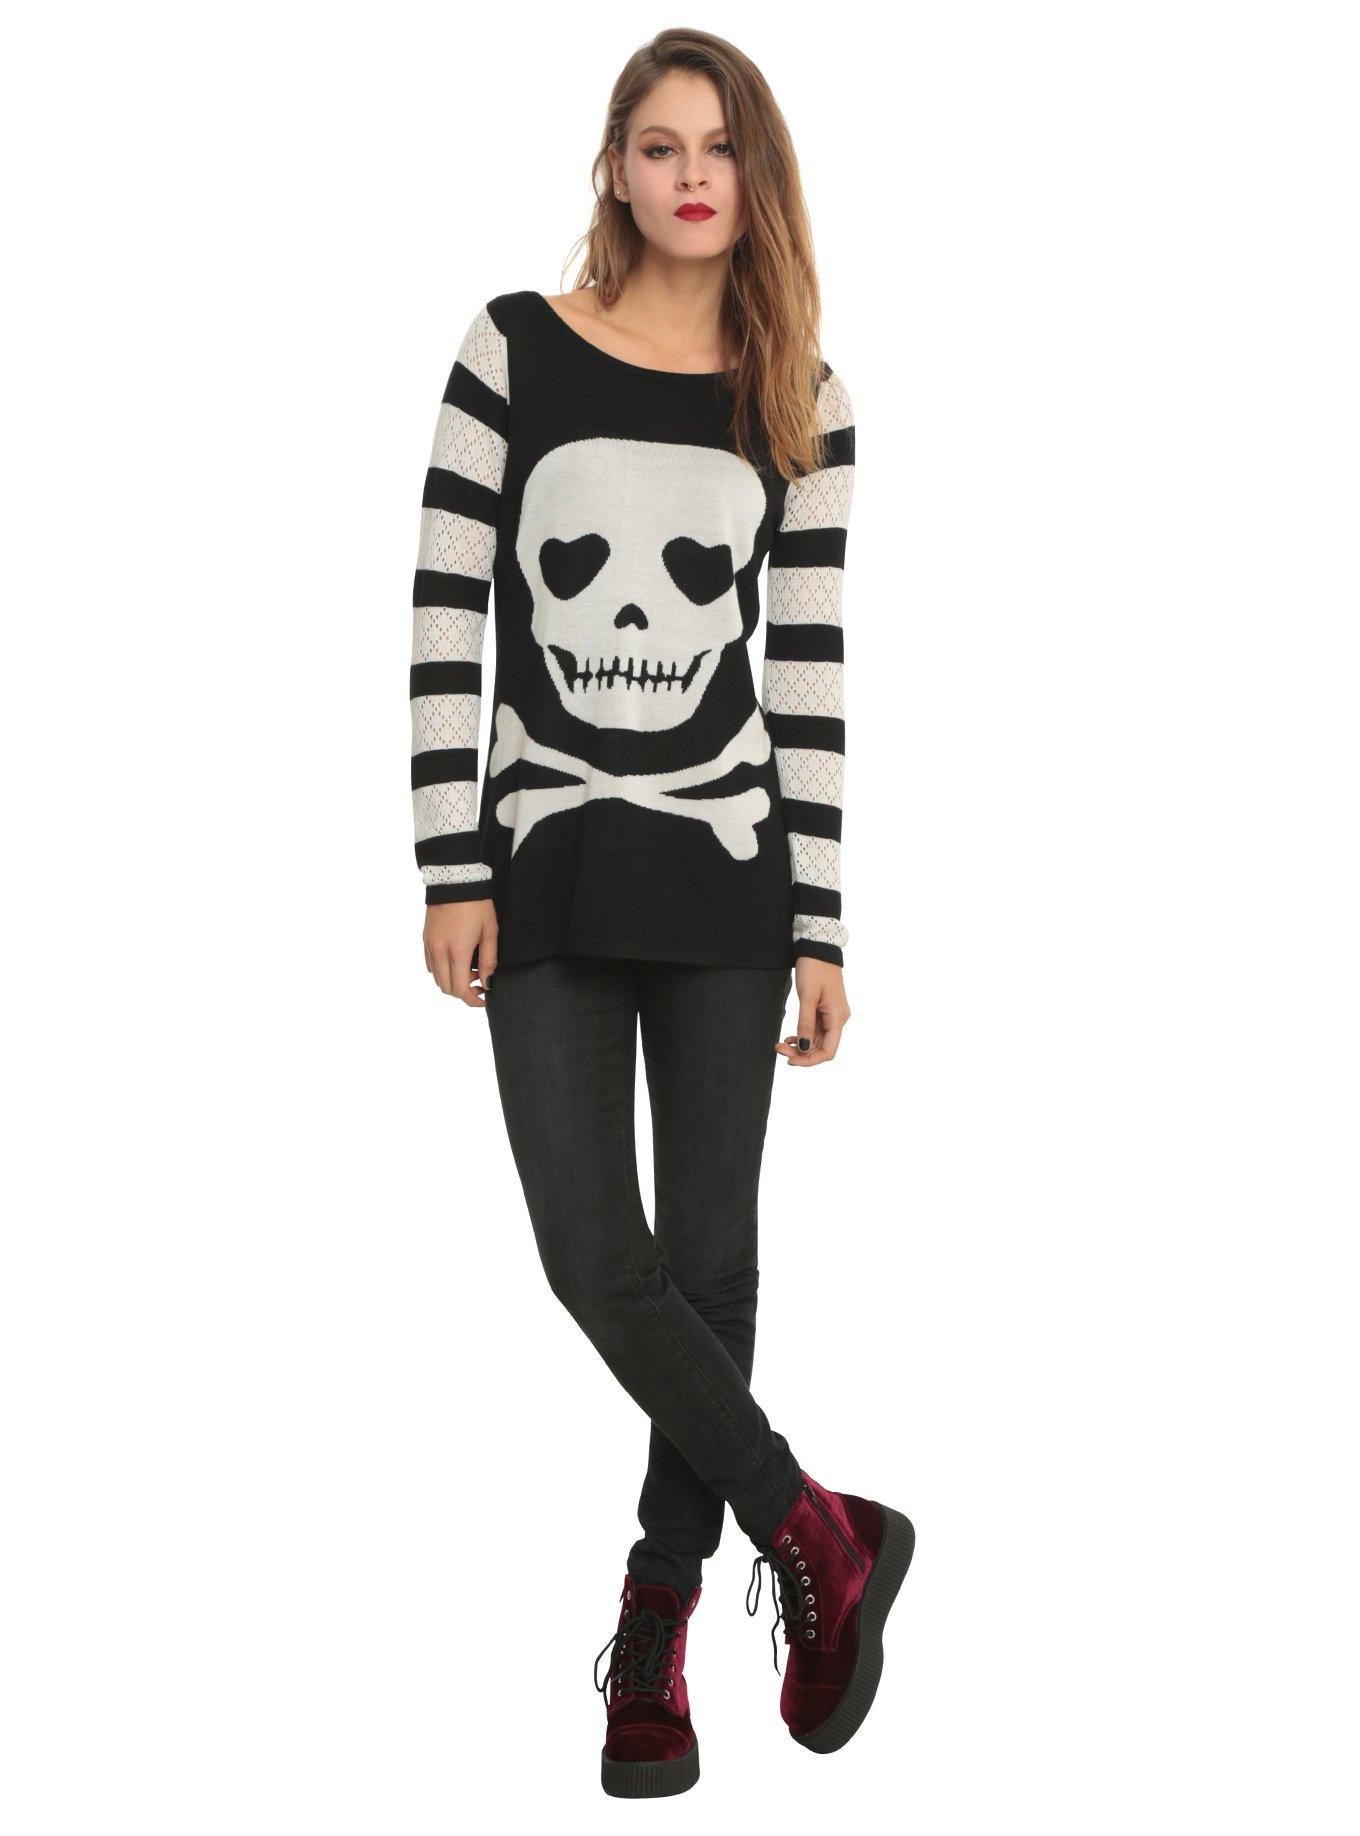 Jawbreaker Striped Skull Girls Sweater, BLACK, alternate